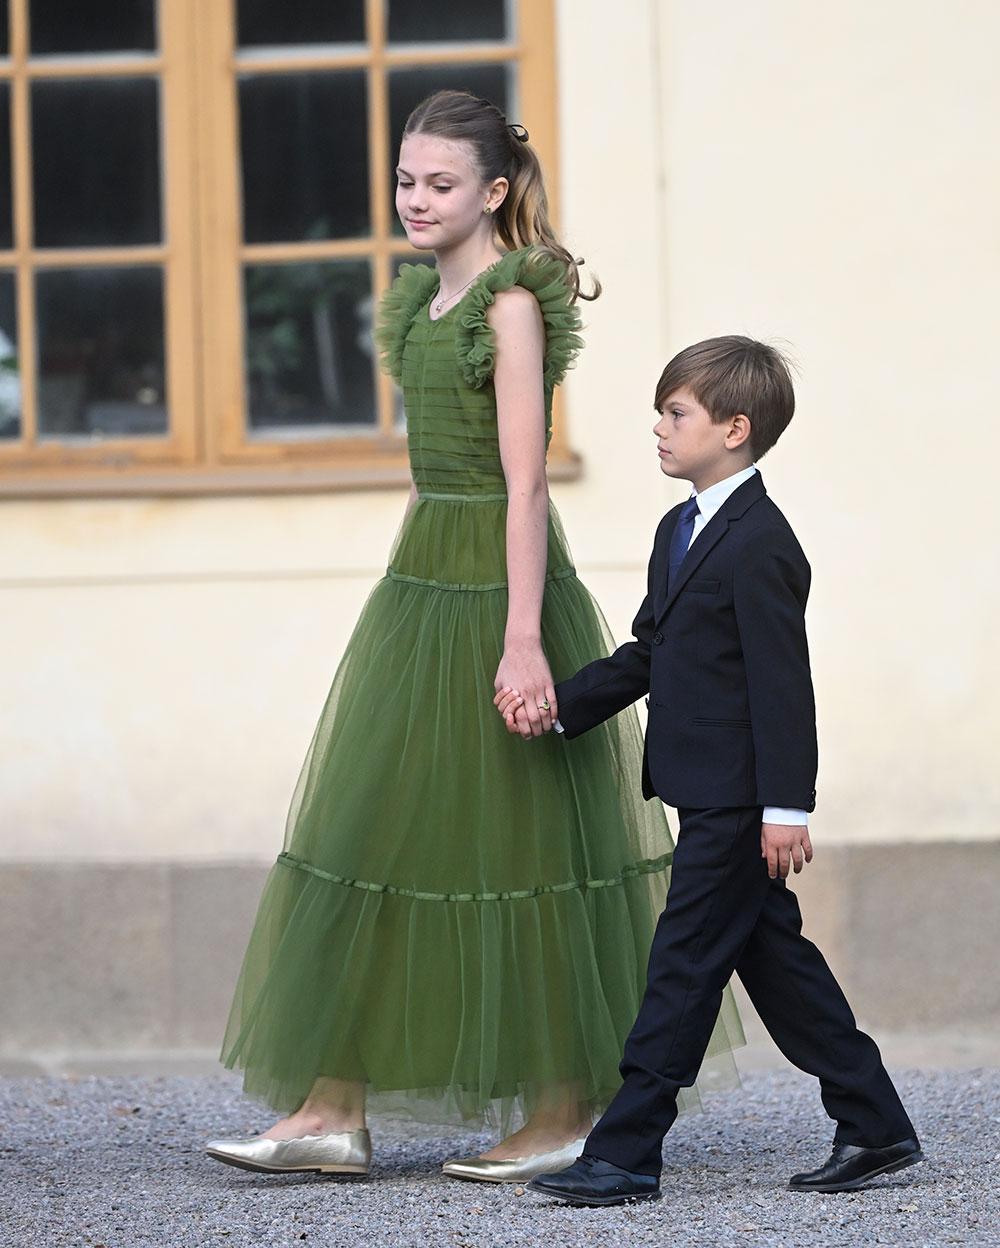 Prinsessan Estelle i en grön klänning från HM och prins Oscar i mörk kostym på kungens jubileumsfirande. 